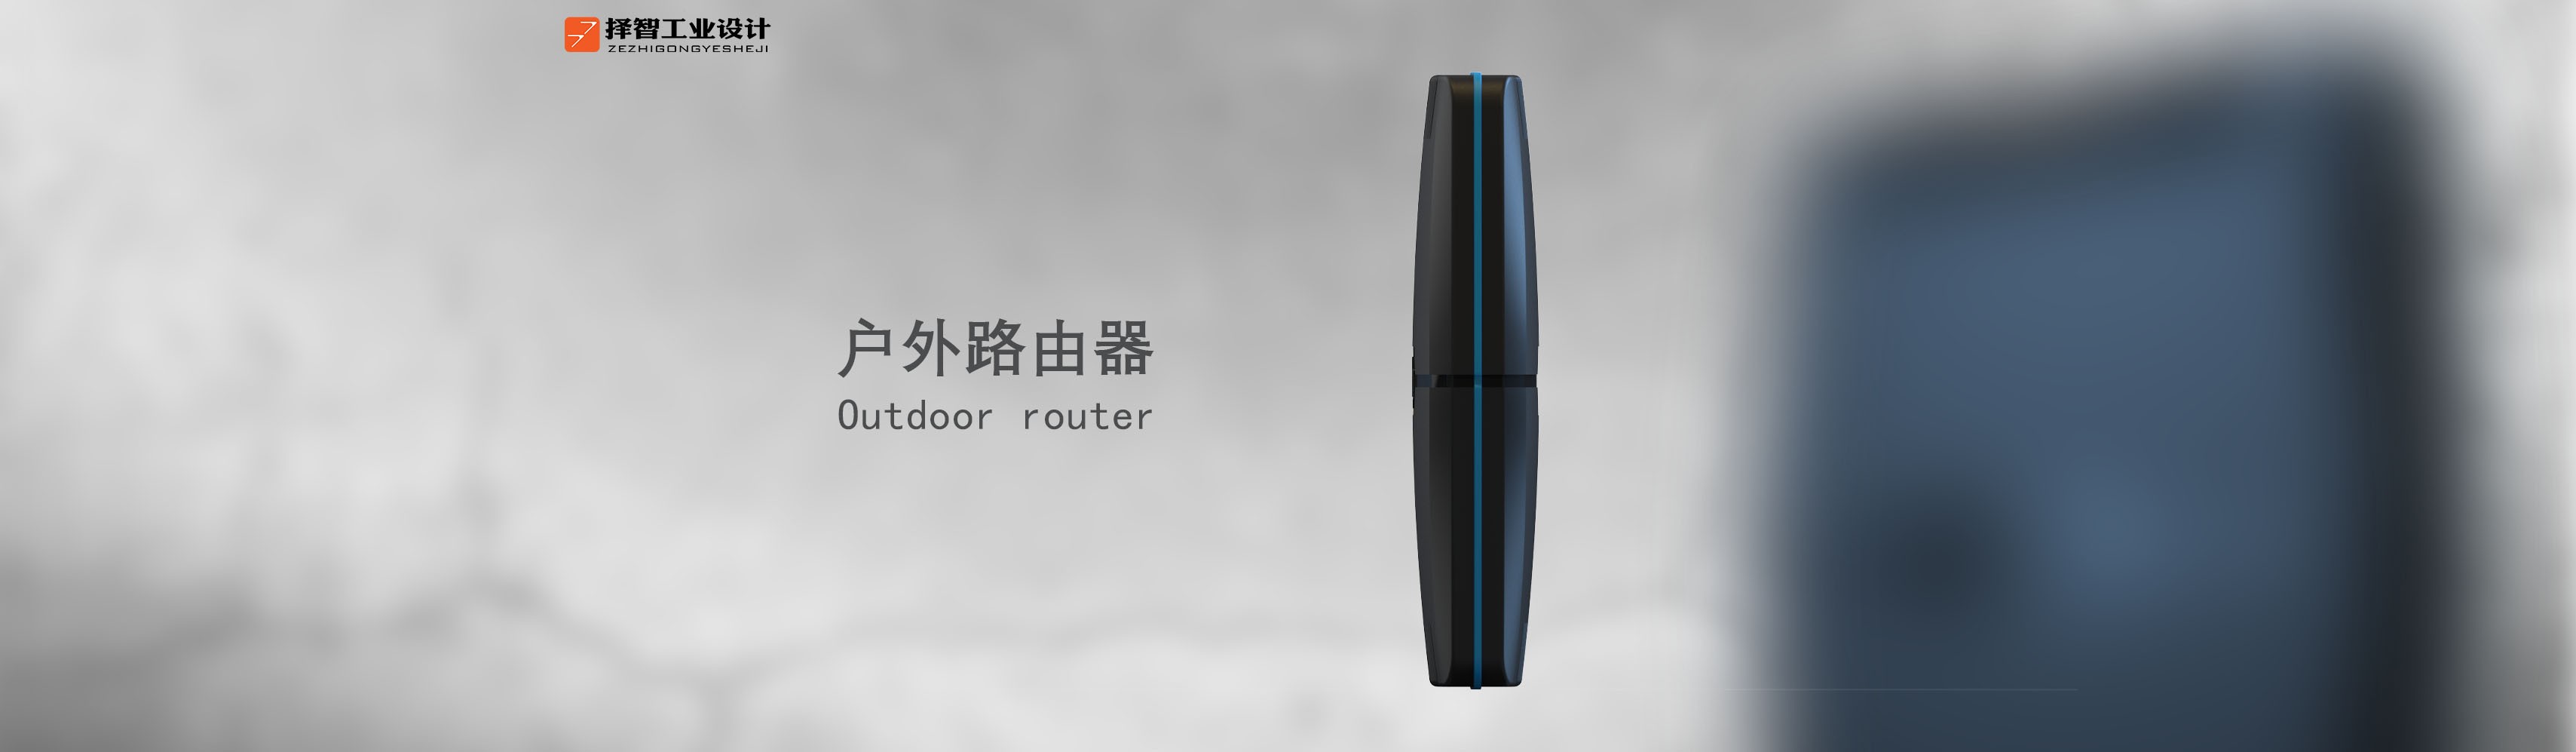 上海苏州工业设计工业产品设计外观设计结构设计户外路由器